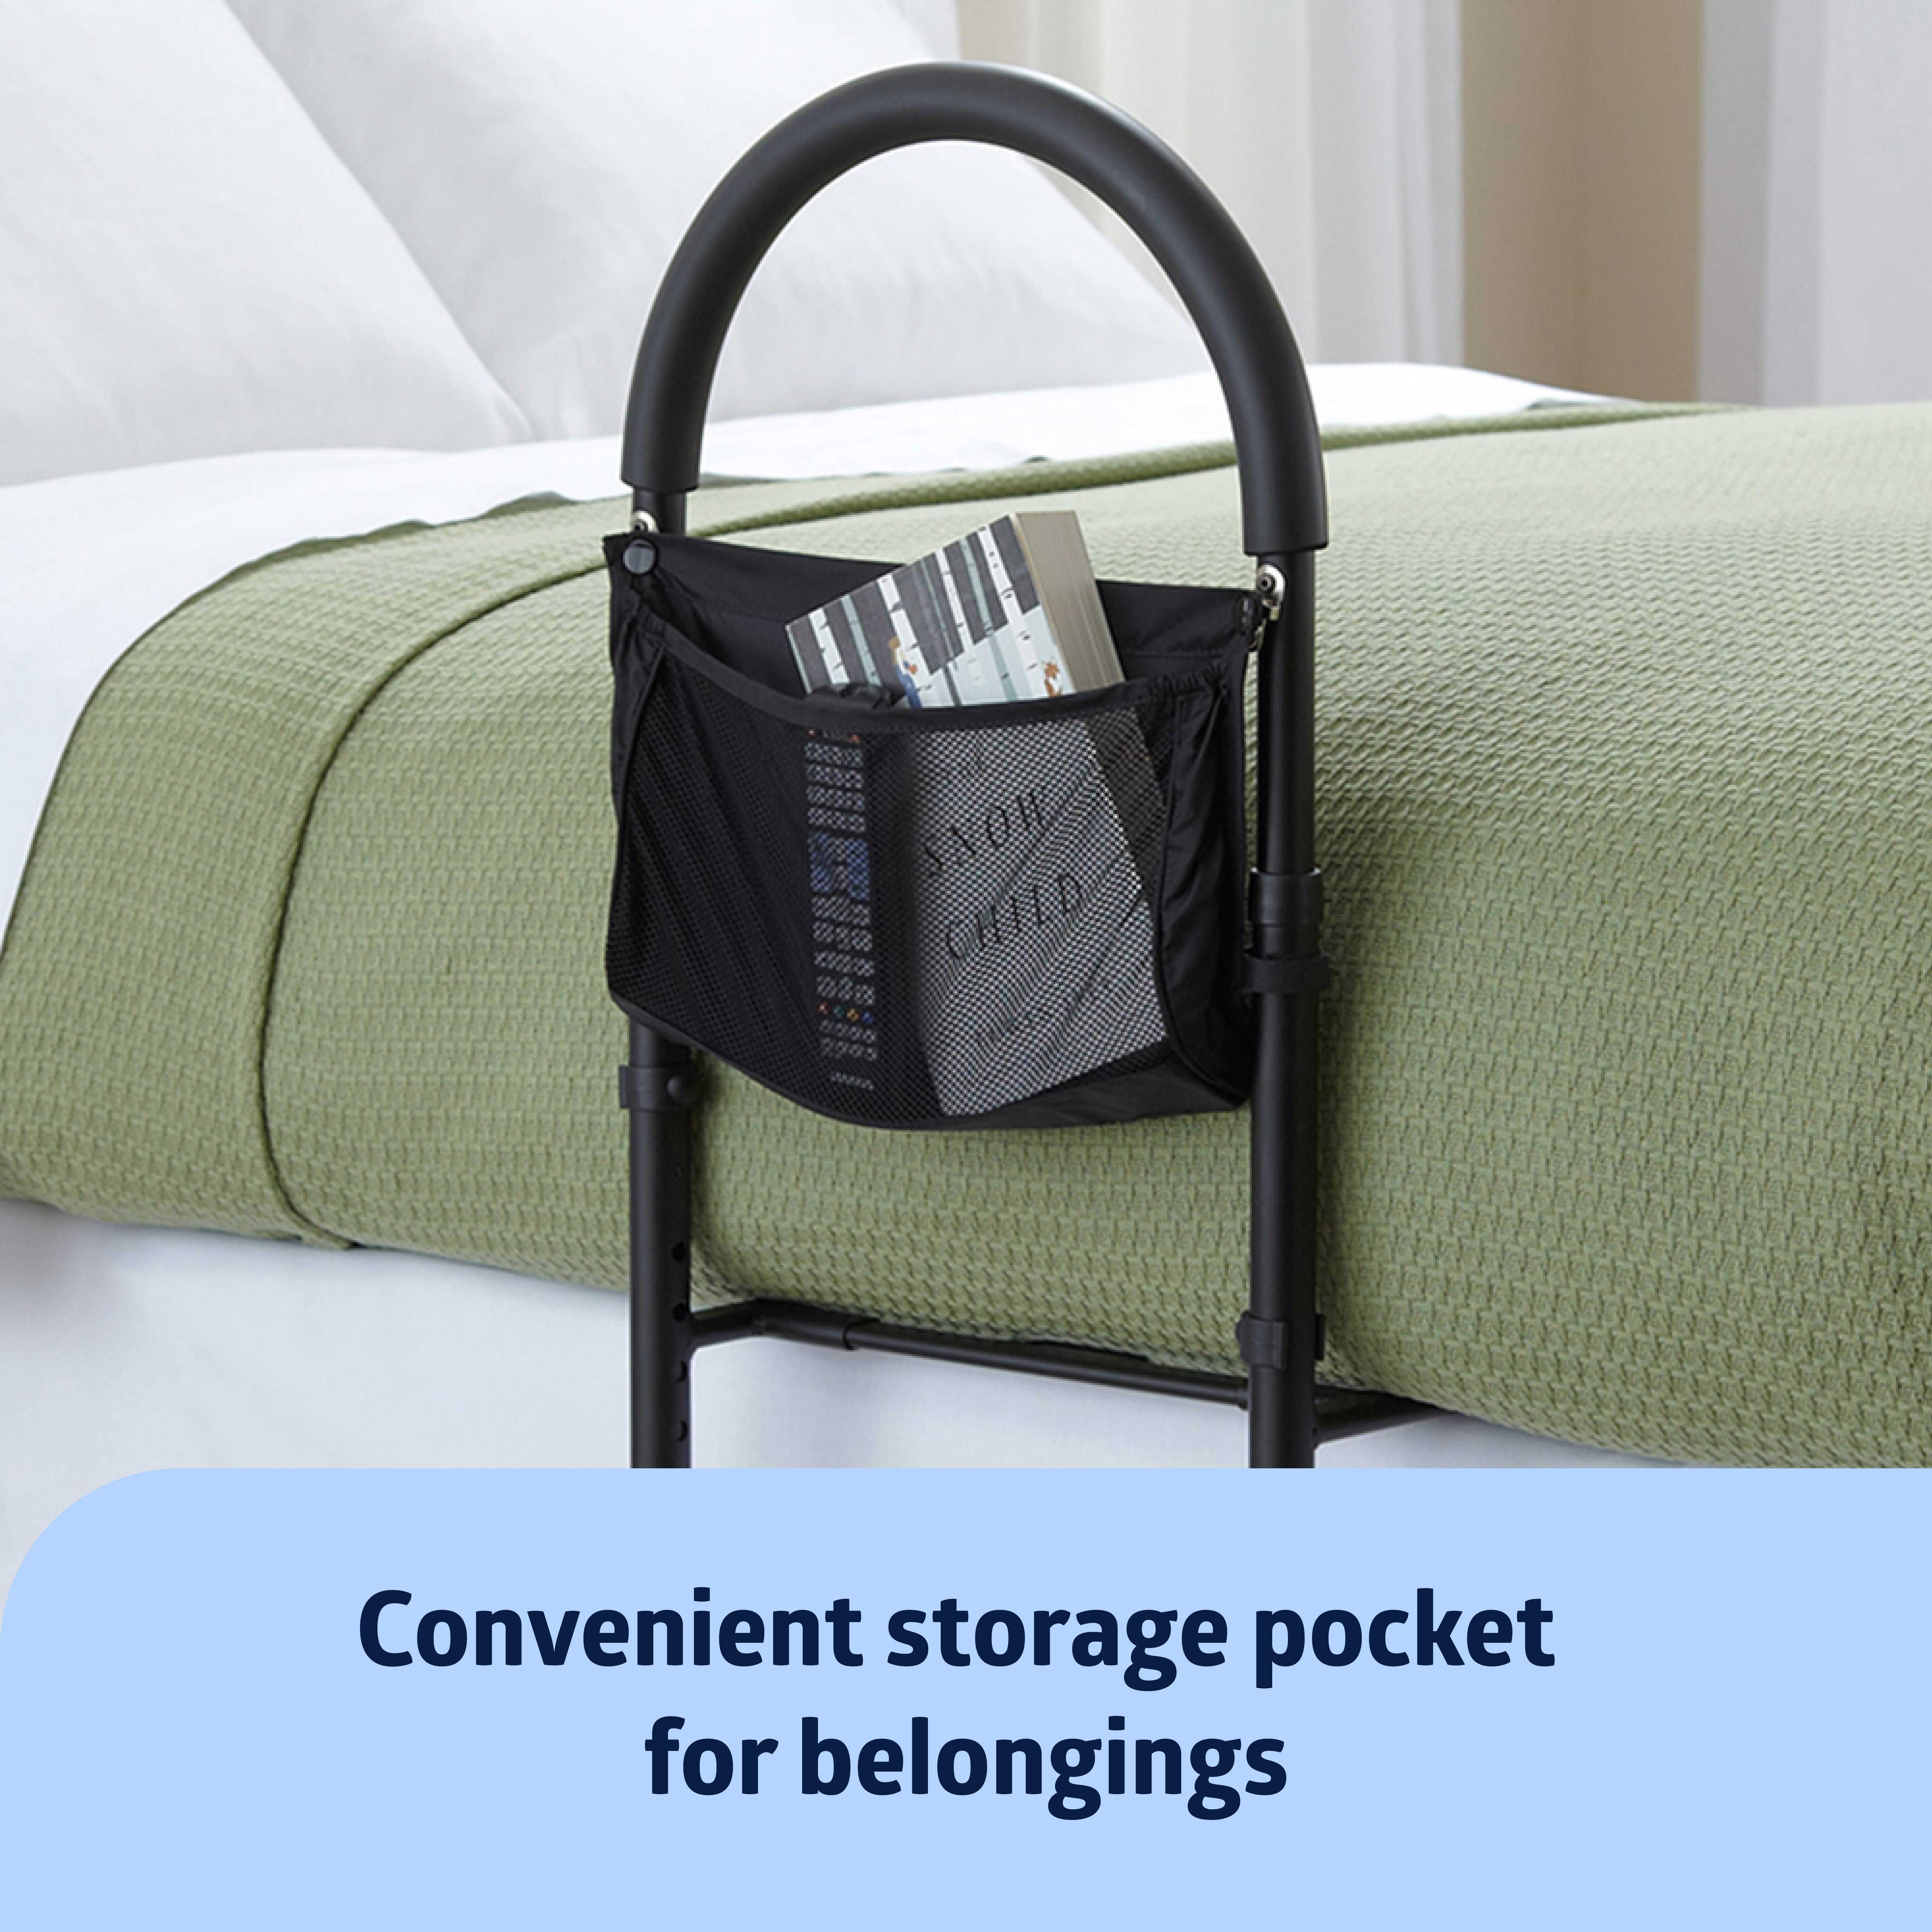 Medline Bed Assist Bar with Storage Pocket, Height Adjustable Bed Grab Bar, Black Frame - image 4 of 8